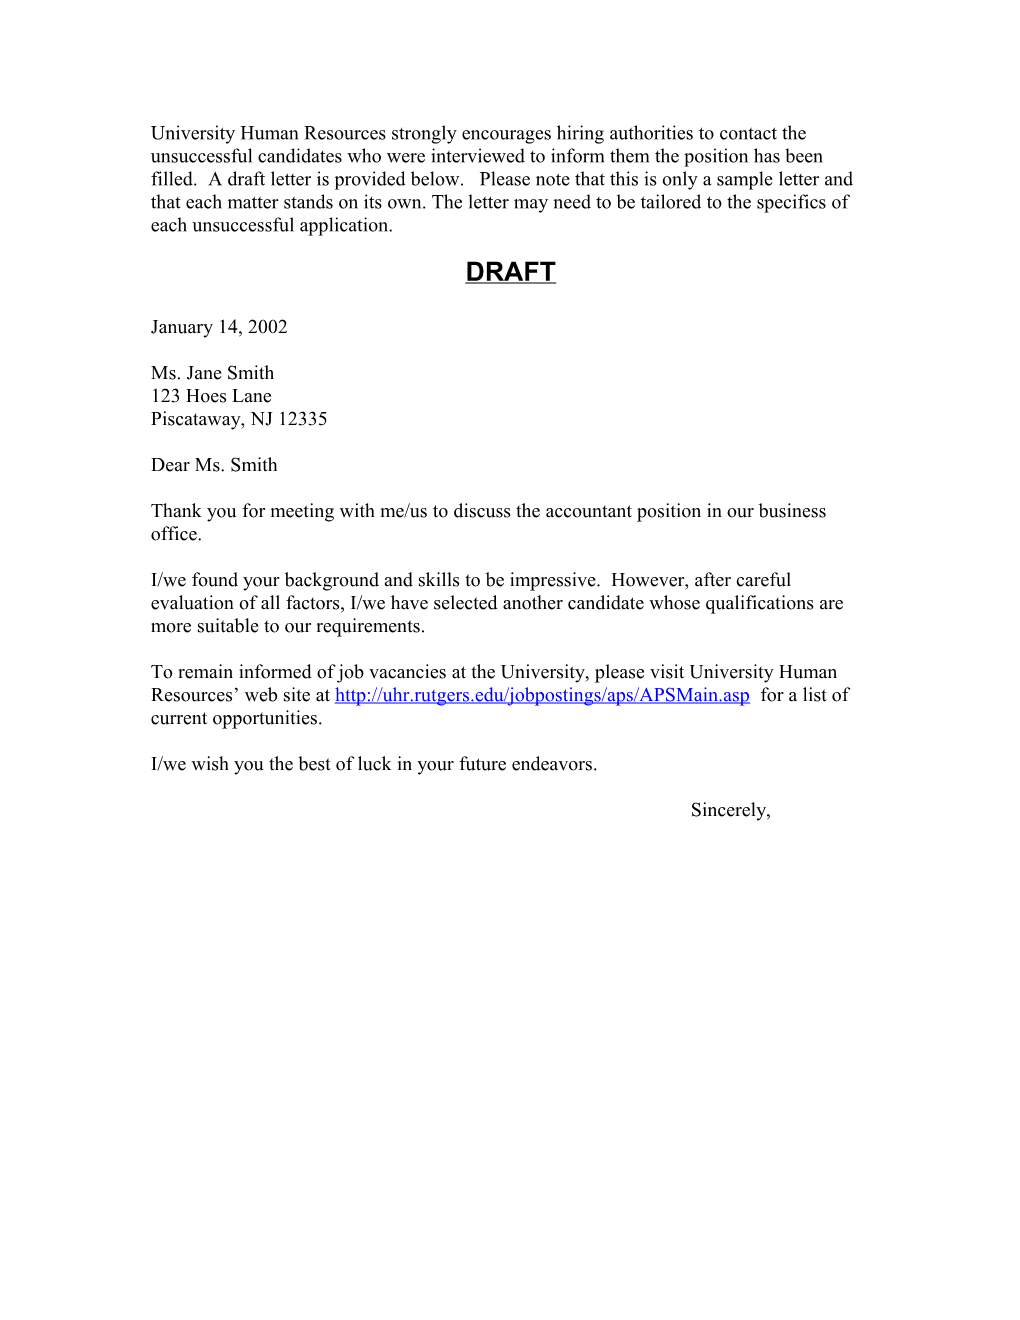 Applicant Rejection Letter - Sample